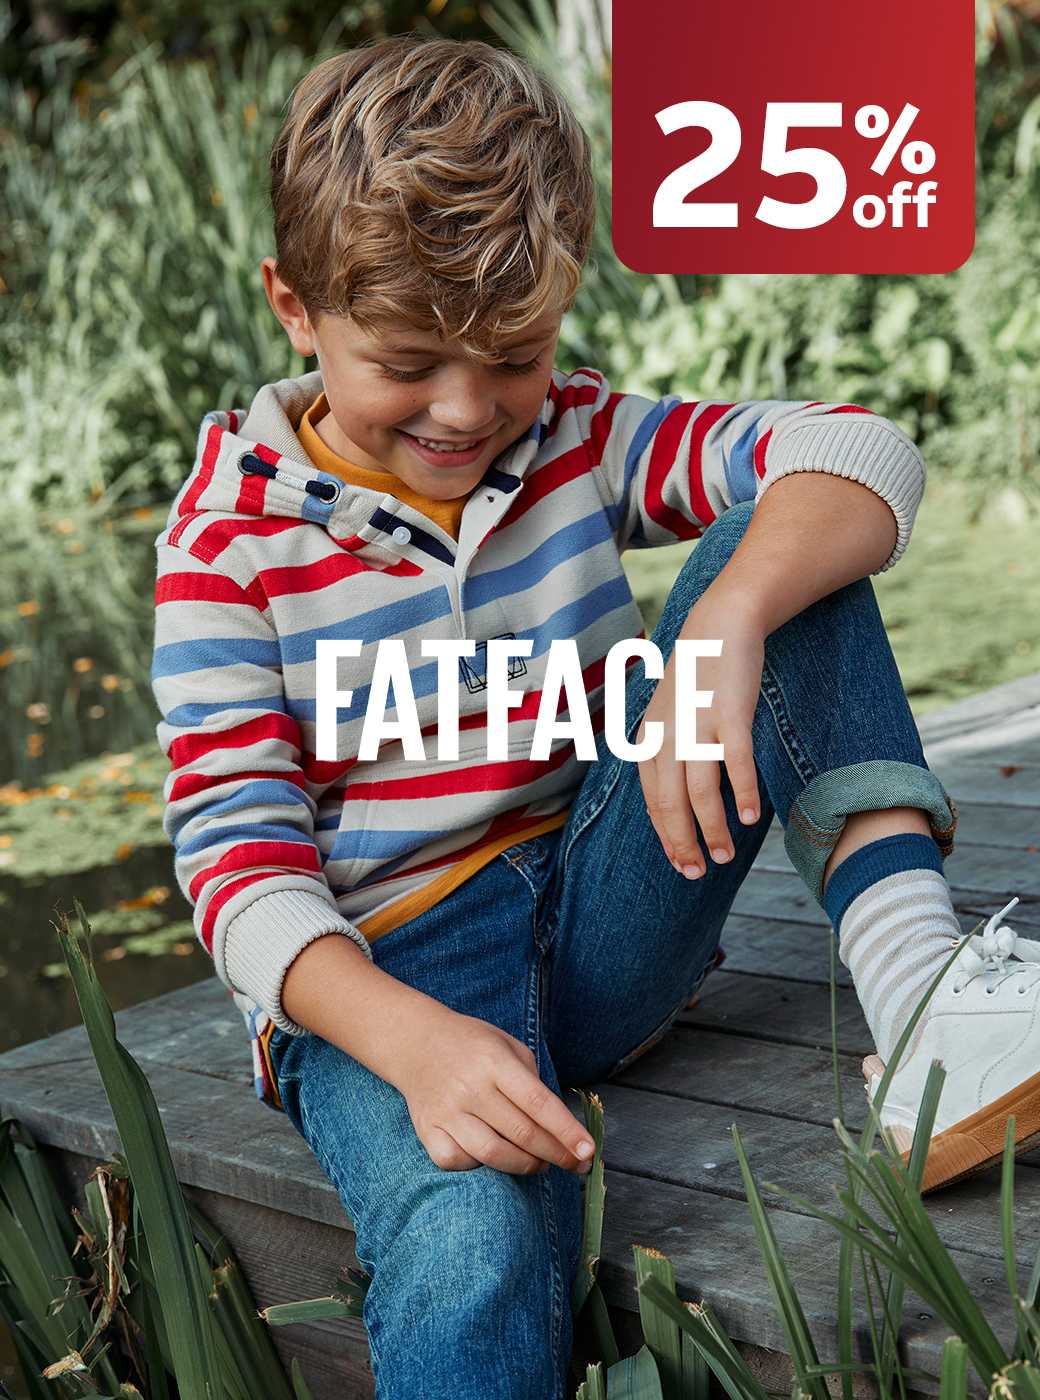 FatFace. Shop now.